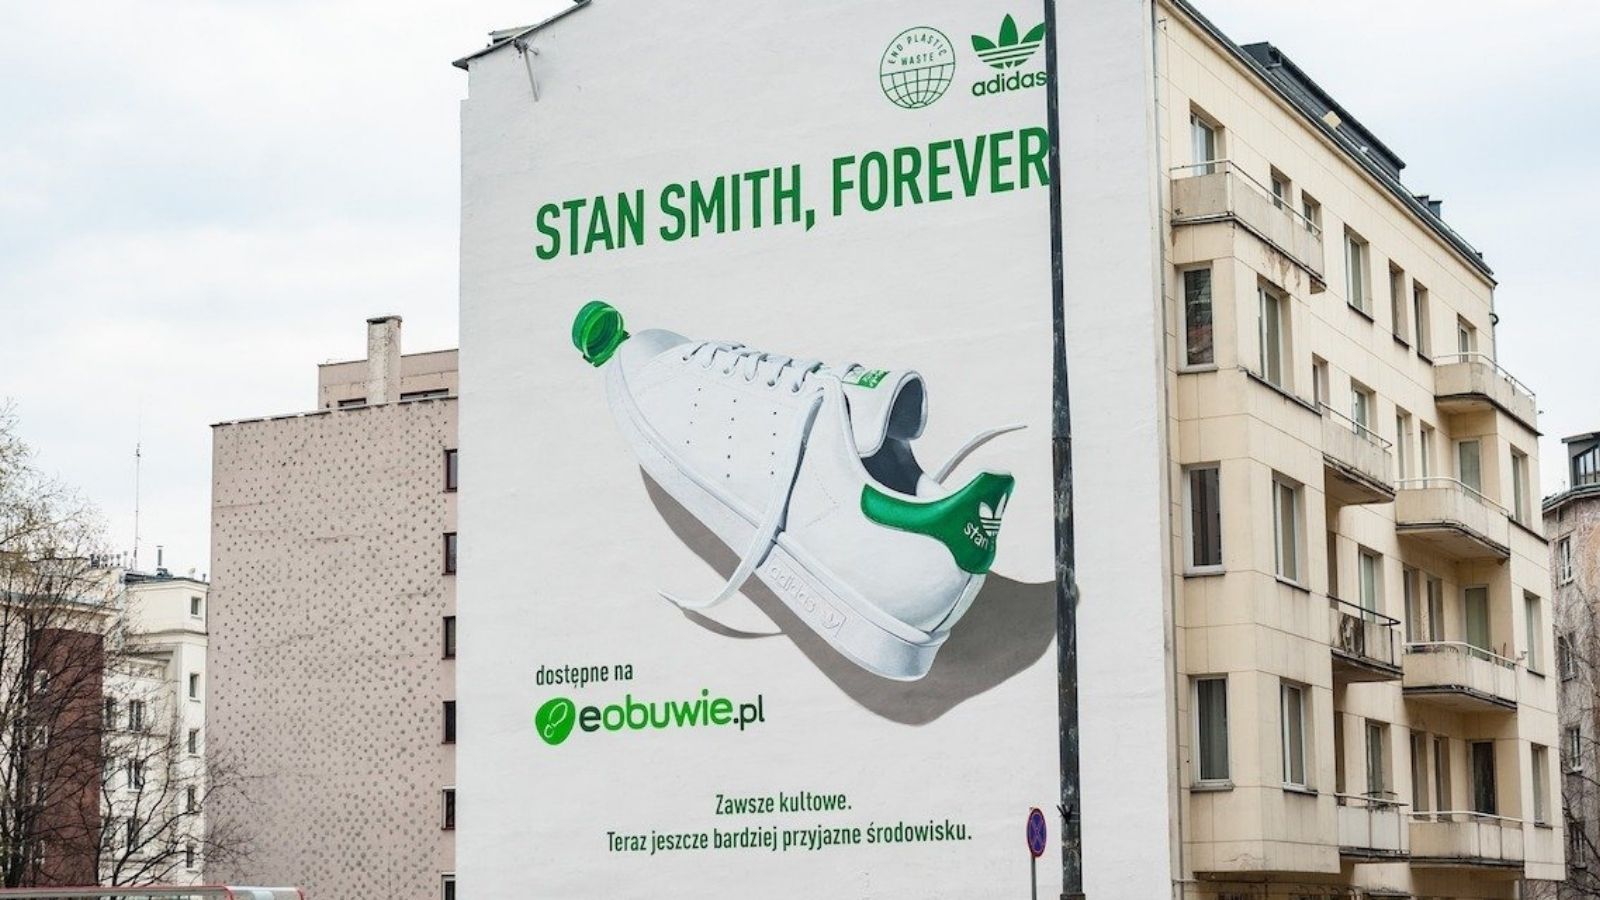 Adidas i eobuwie.pl z muralem oczyszczającym powietrze w centrum stolicy Adidas mediarun adidas eobuwie